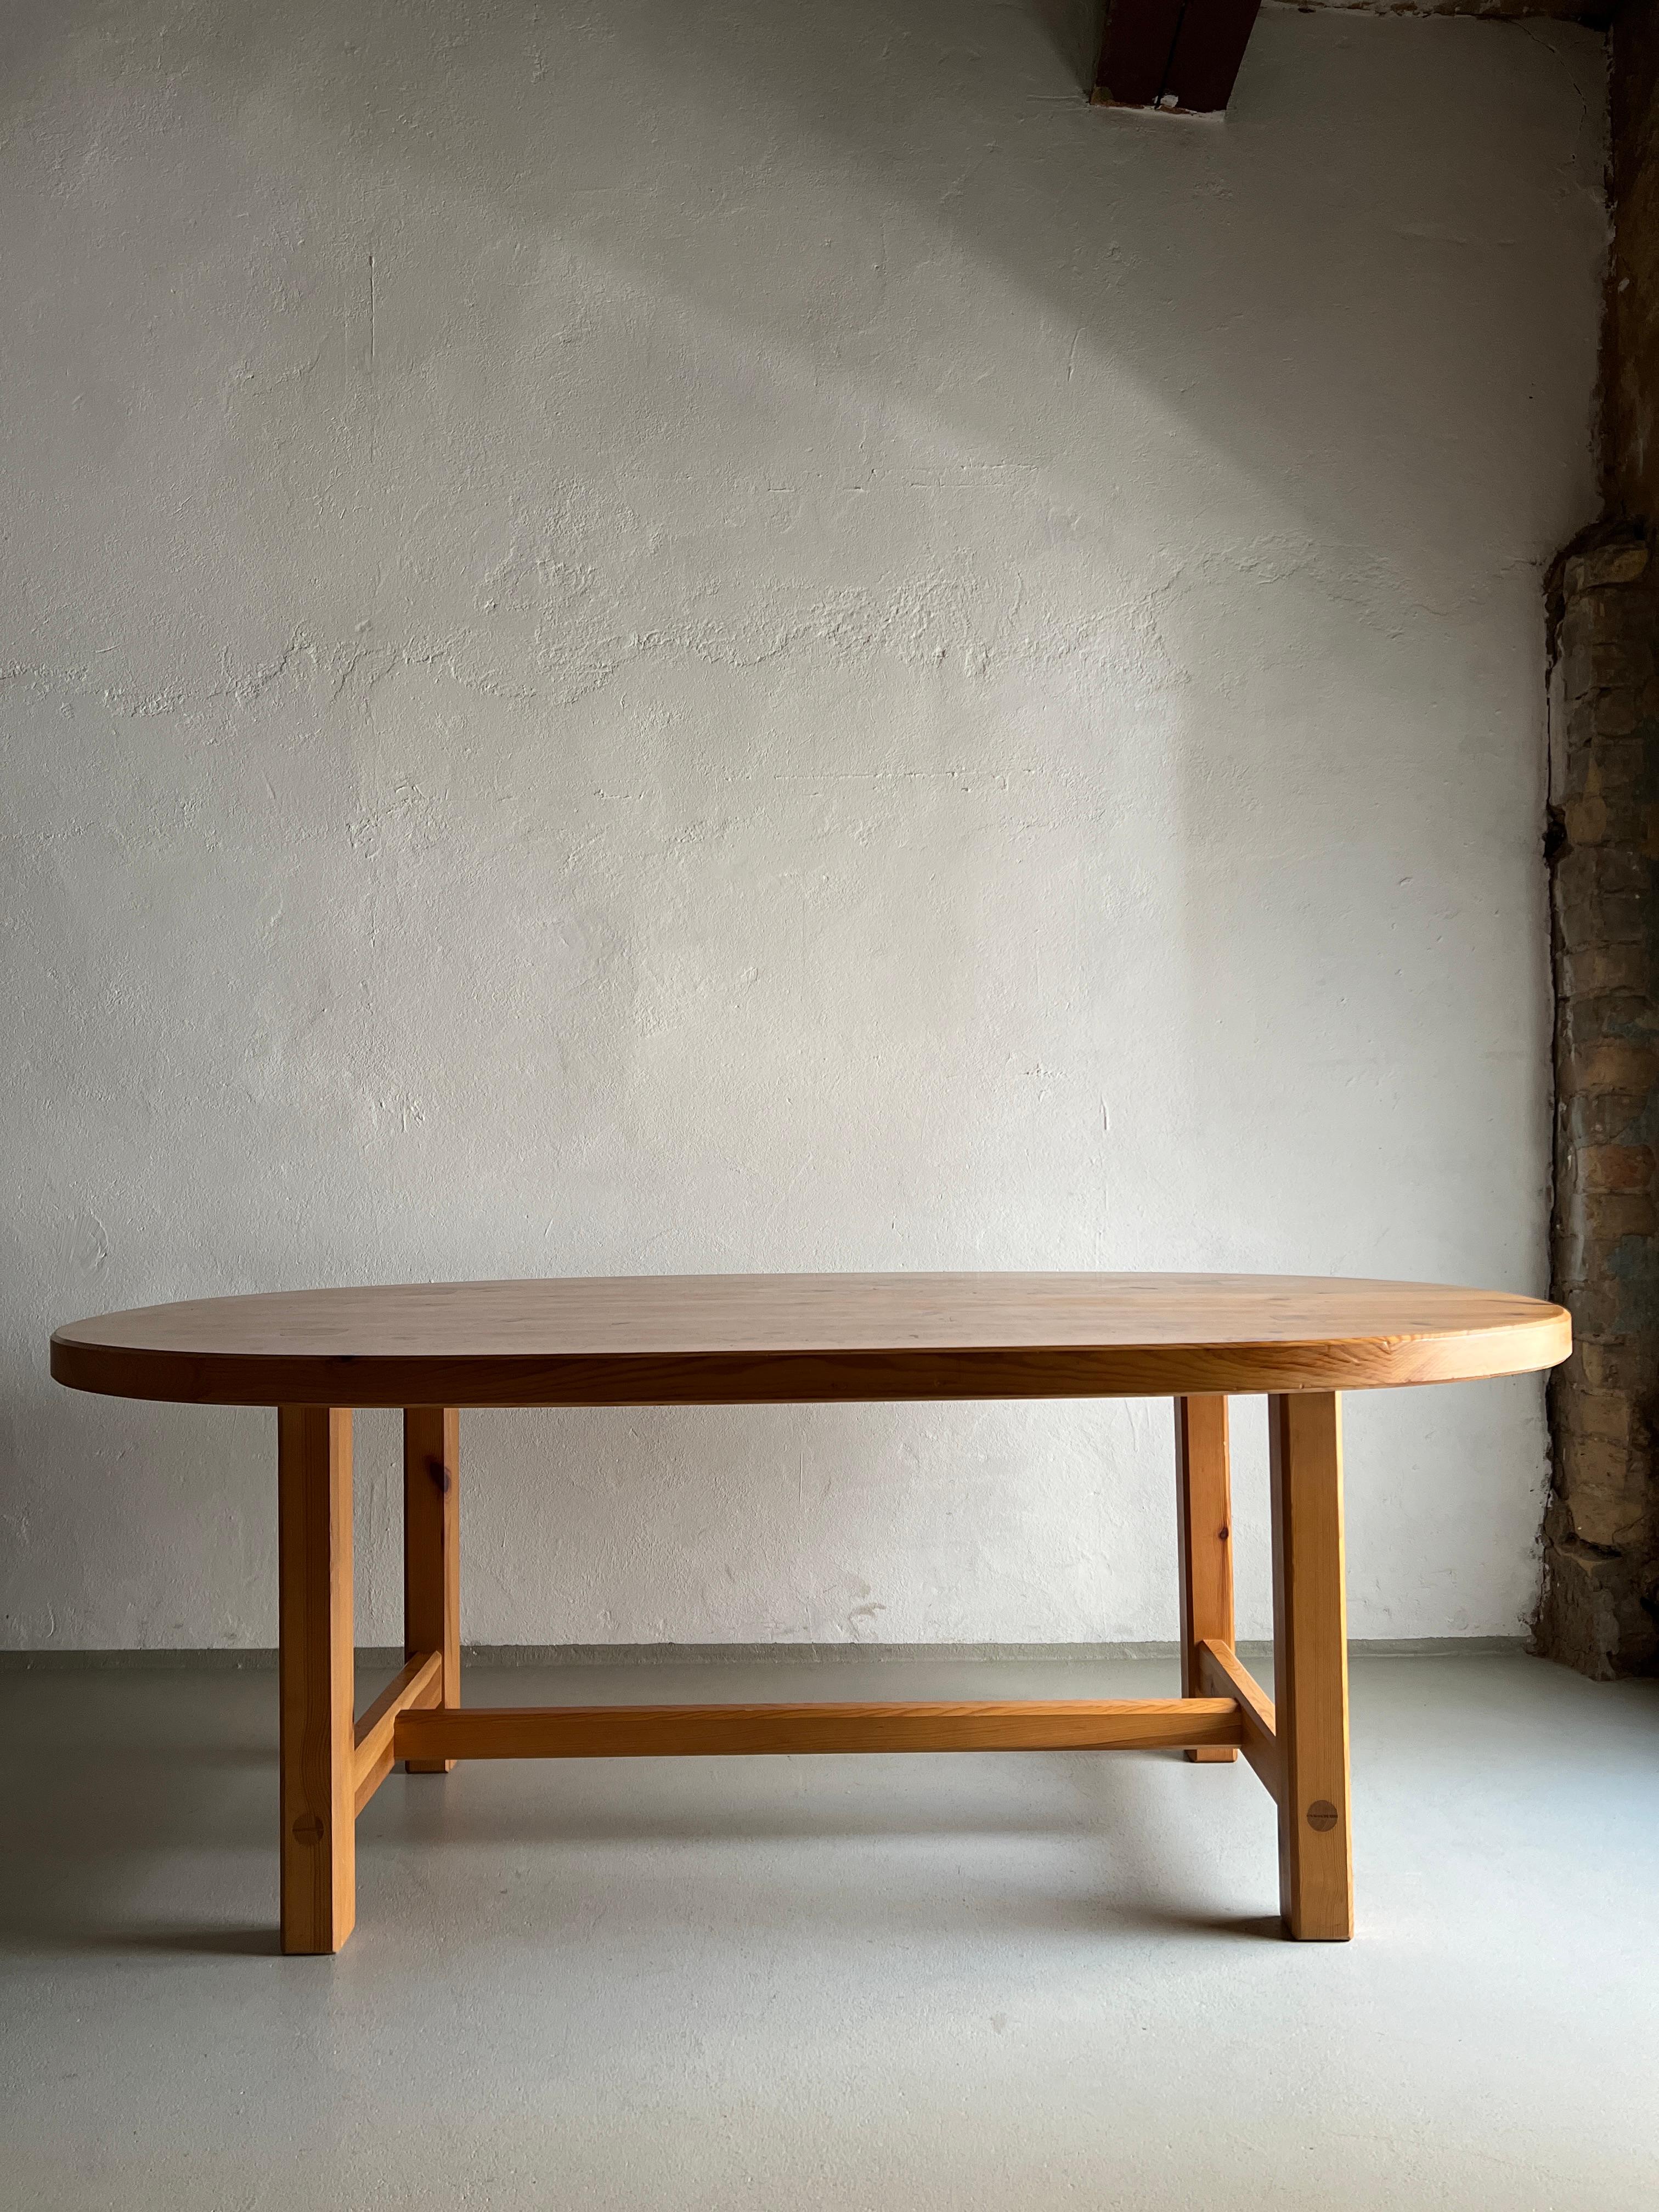 Table de salle à manger ovale en pin massif, conçue par Roland Wilhelmsson dans les années 1970.

Informations complémentaires :
Fabricant : AB Karl Andersson & Söner, Suède
Période : 1970s
Dimensions : H(table/plateau) : 70,5/6 cm, L : 190 cm, P :